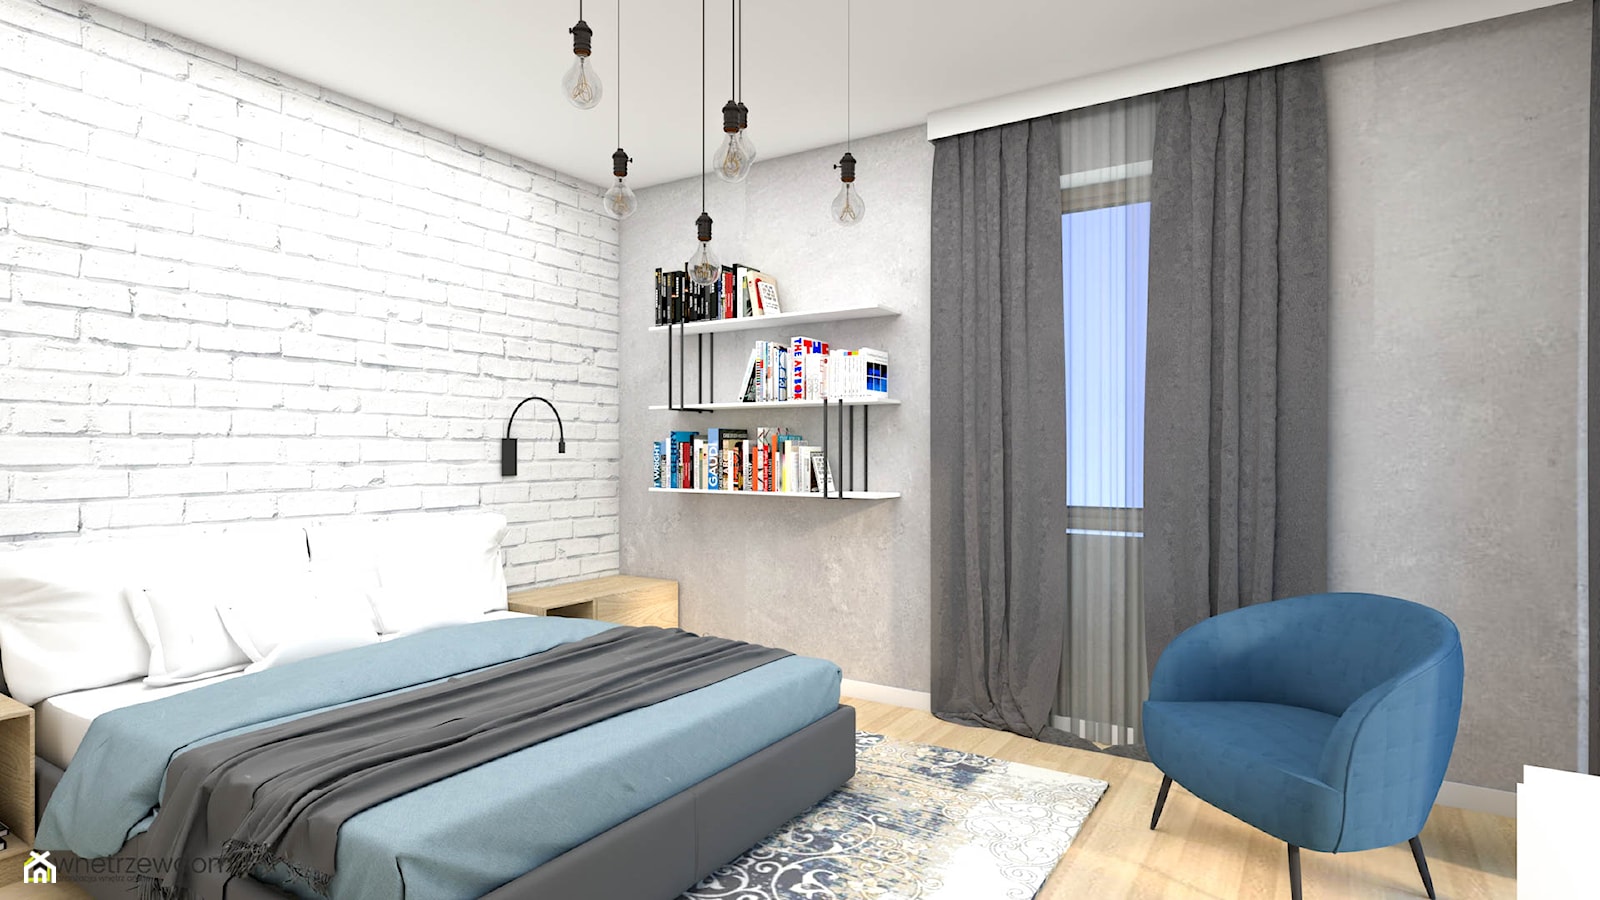 Jasna przestronna sypialnia z białą cegłą - zdjęcie od wnetrzewdomu - Homebook